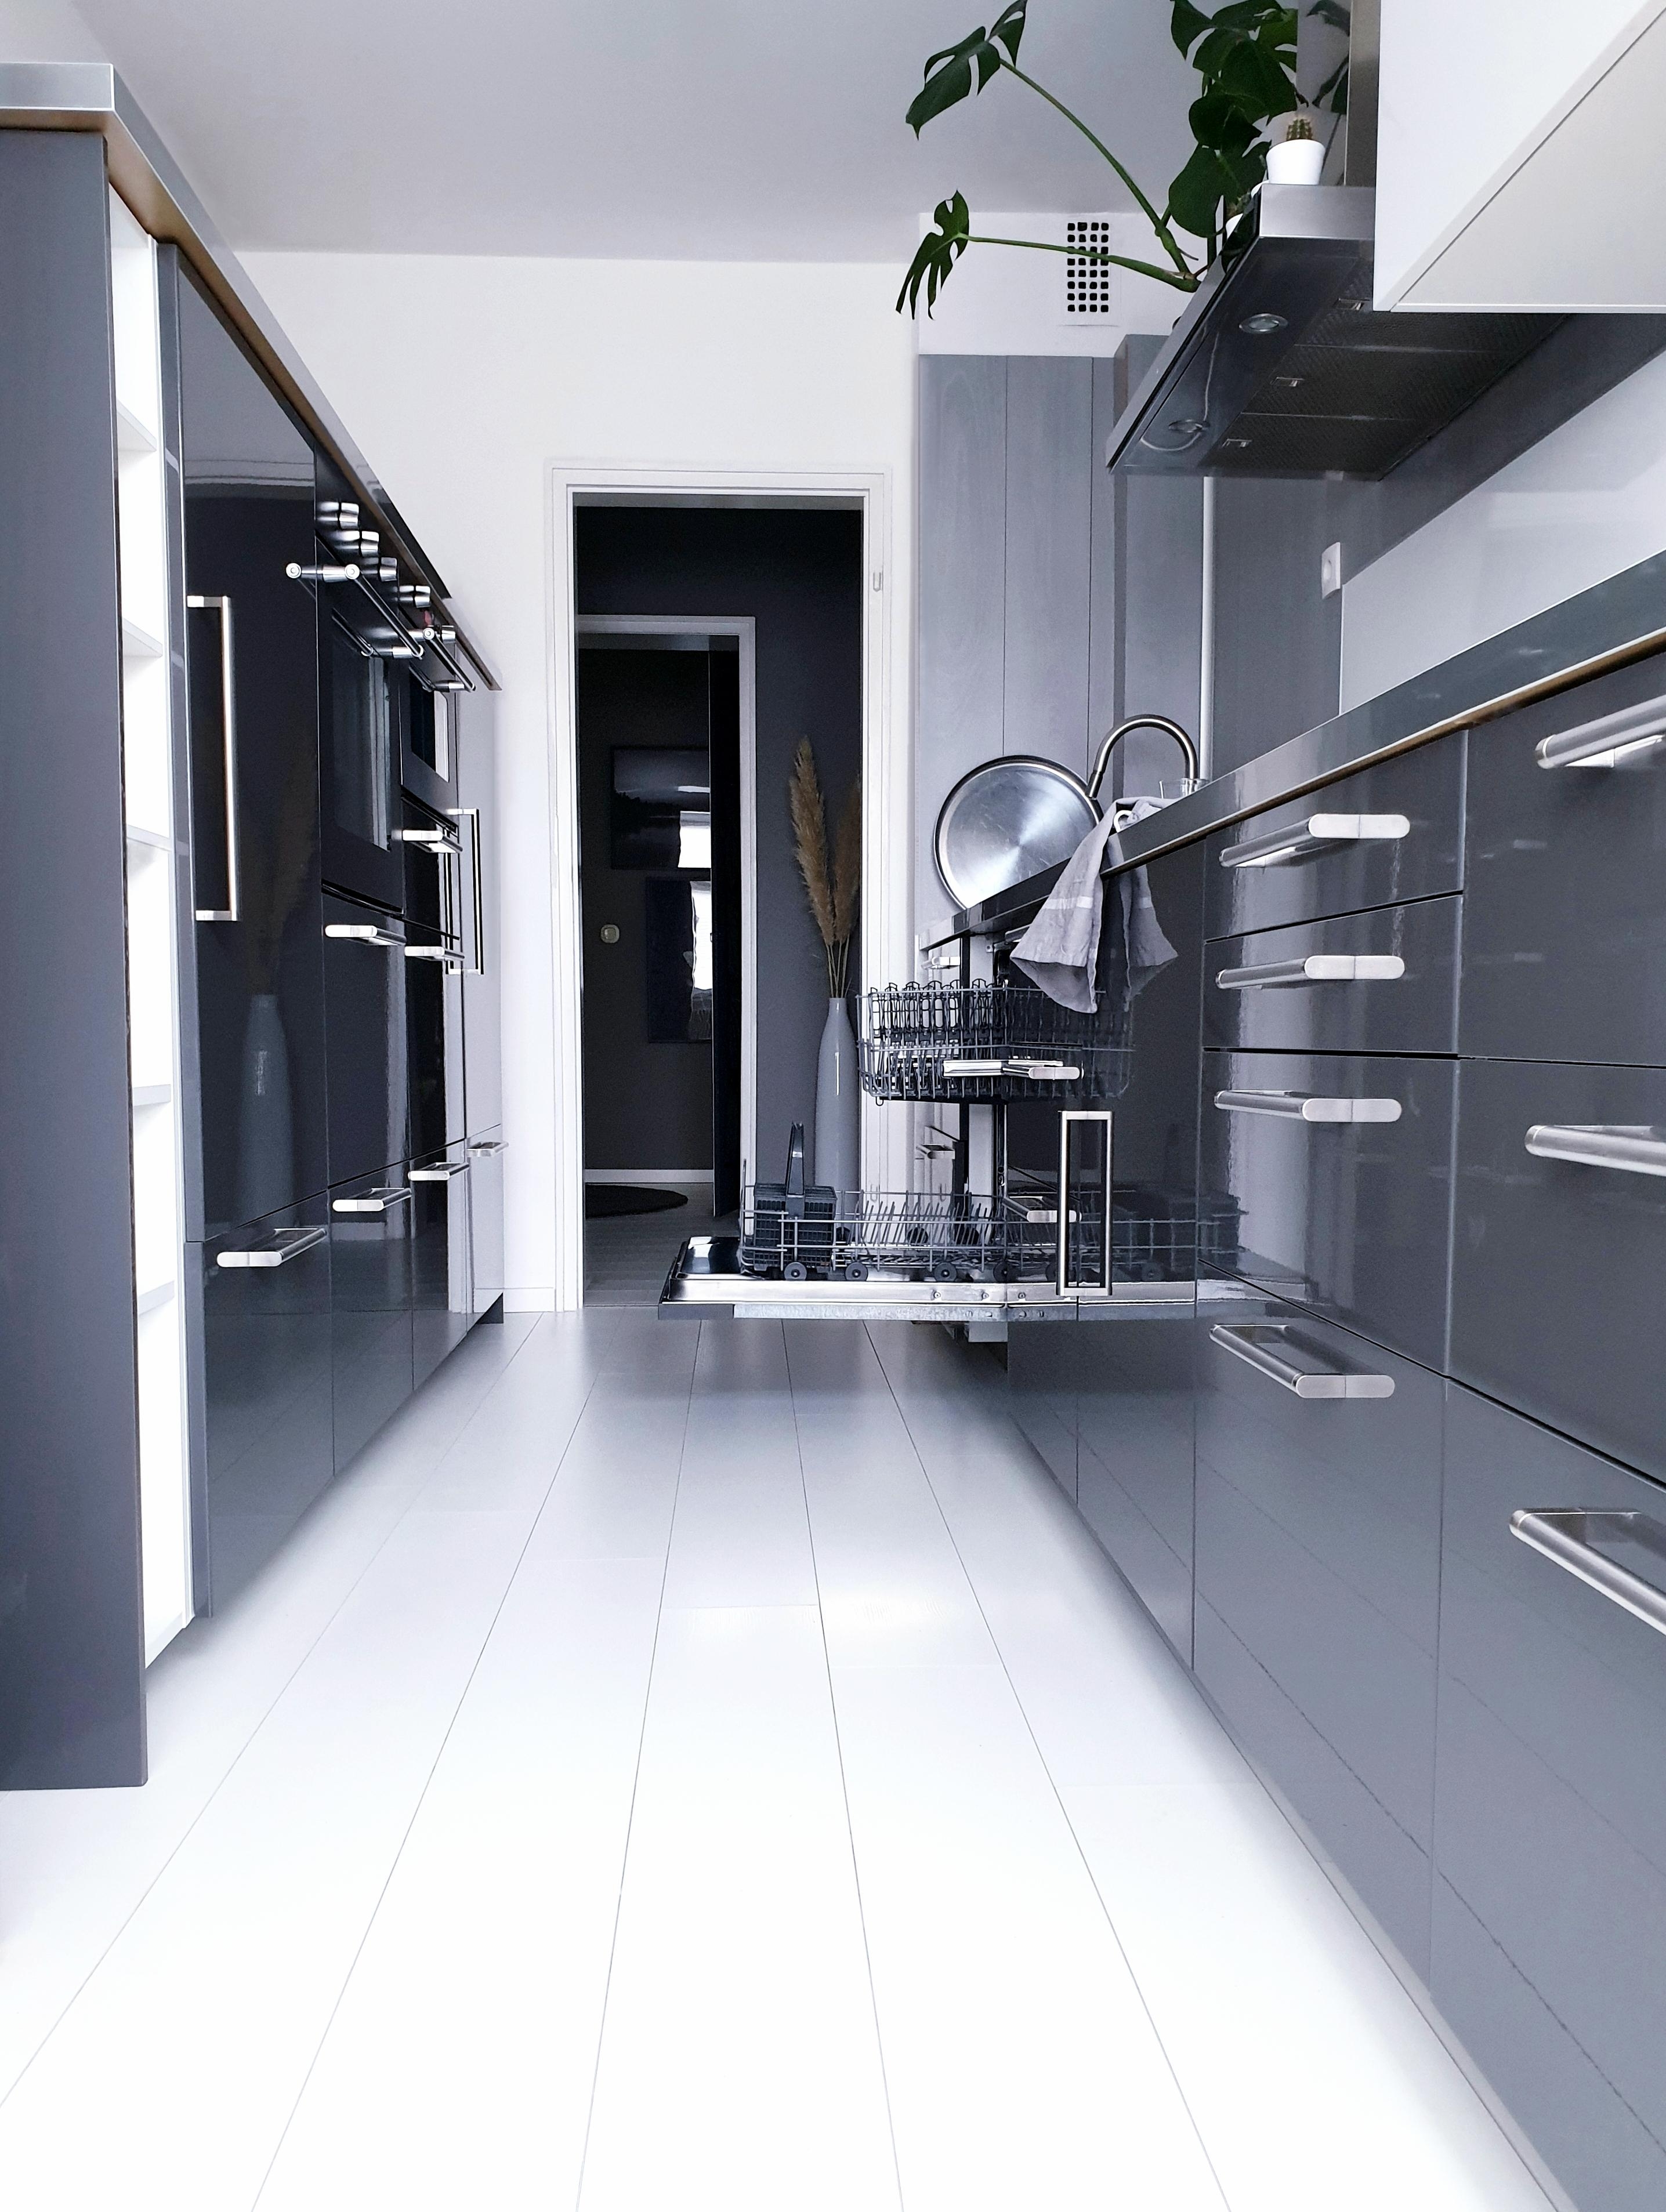 Grauer (Alp-) Traum?!
#küche #kitchen #interior #greyinterior #küchenzeile #grey #white #küchenschrank 